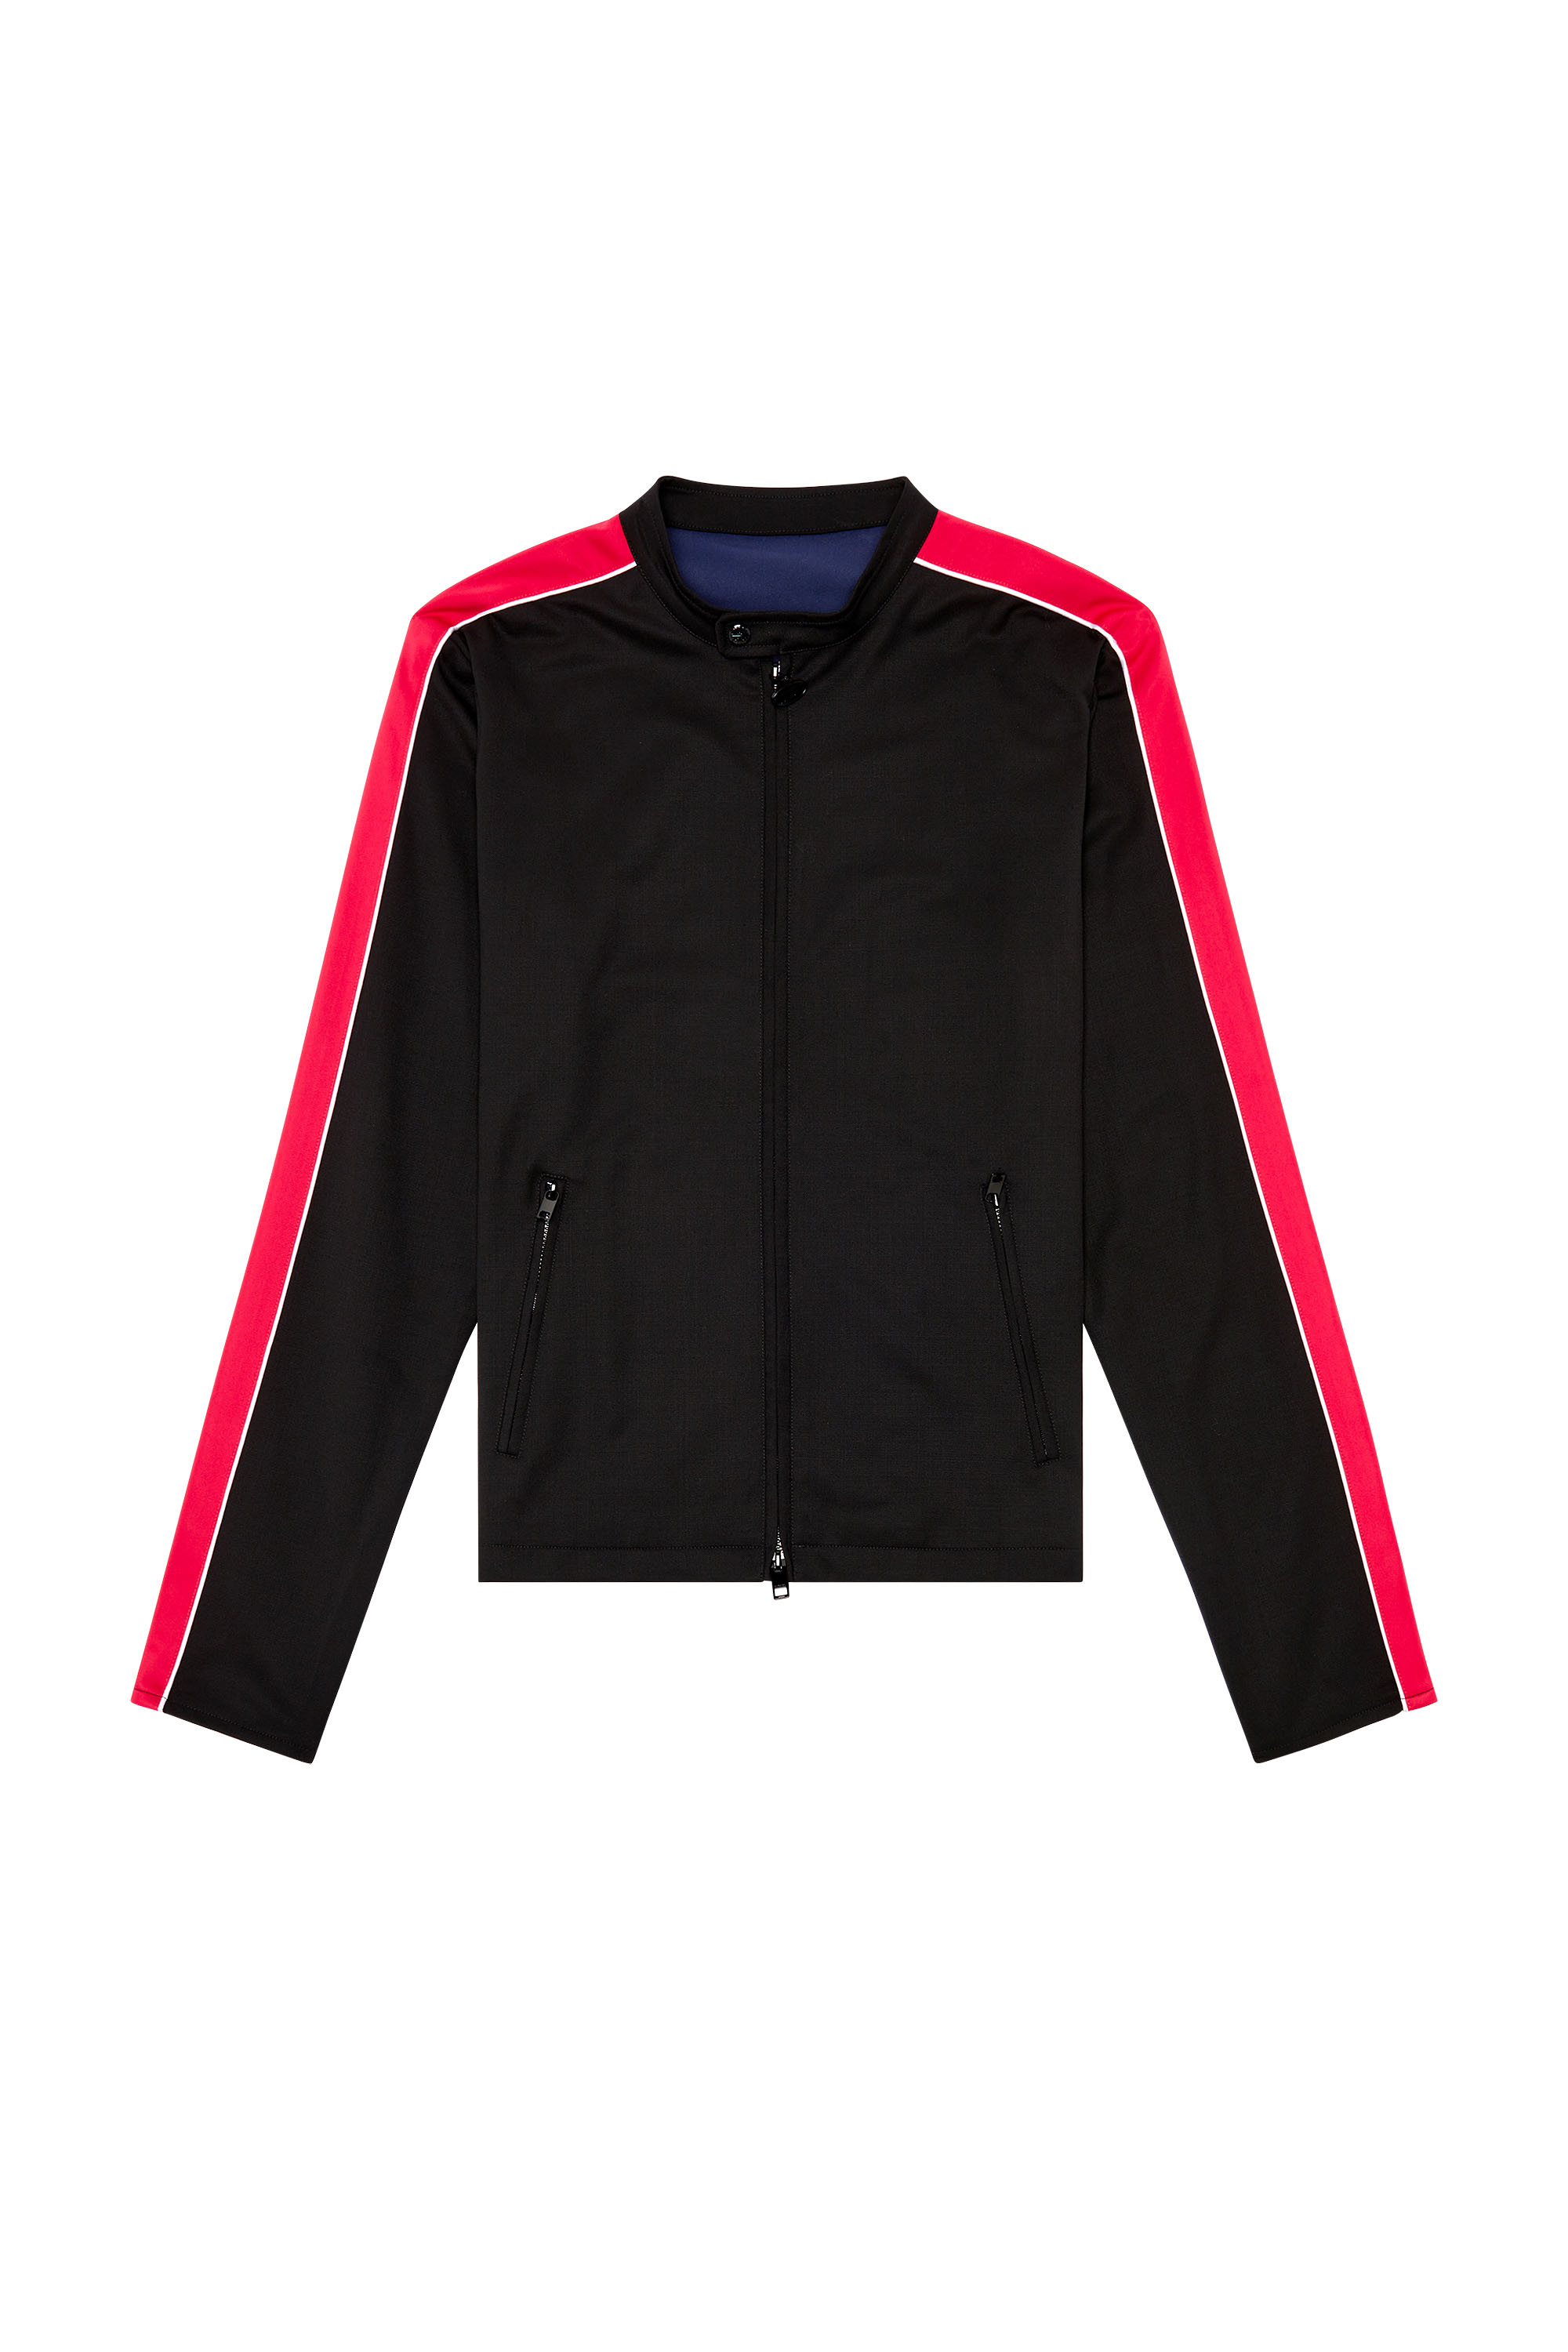 Diesel - J-DEVLIN, Man Biker jacket in cool wool and tech jersey in Multicolor - Image 3